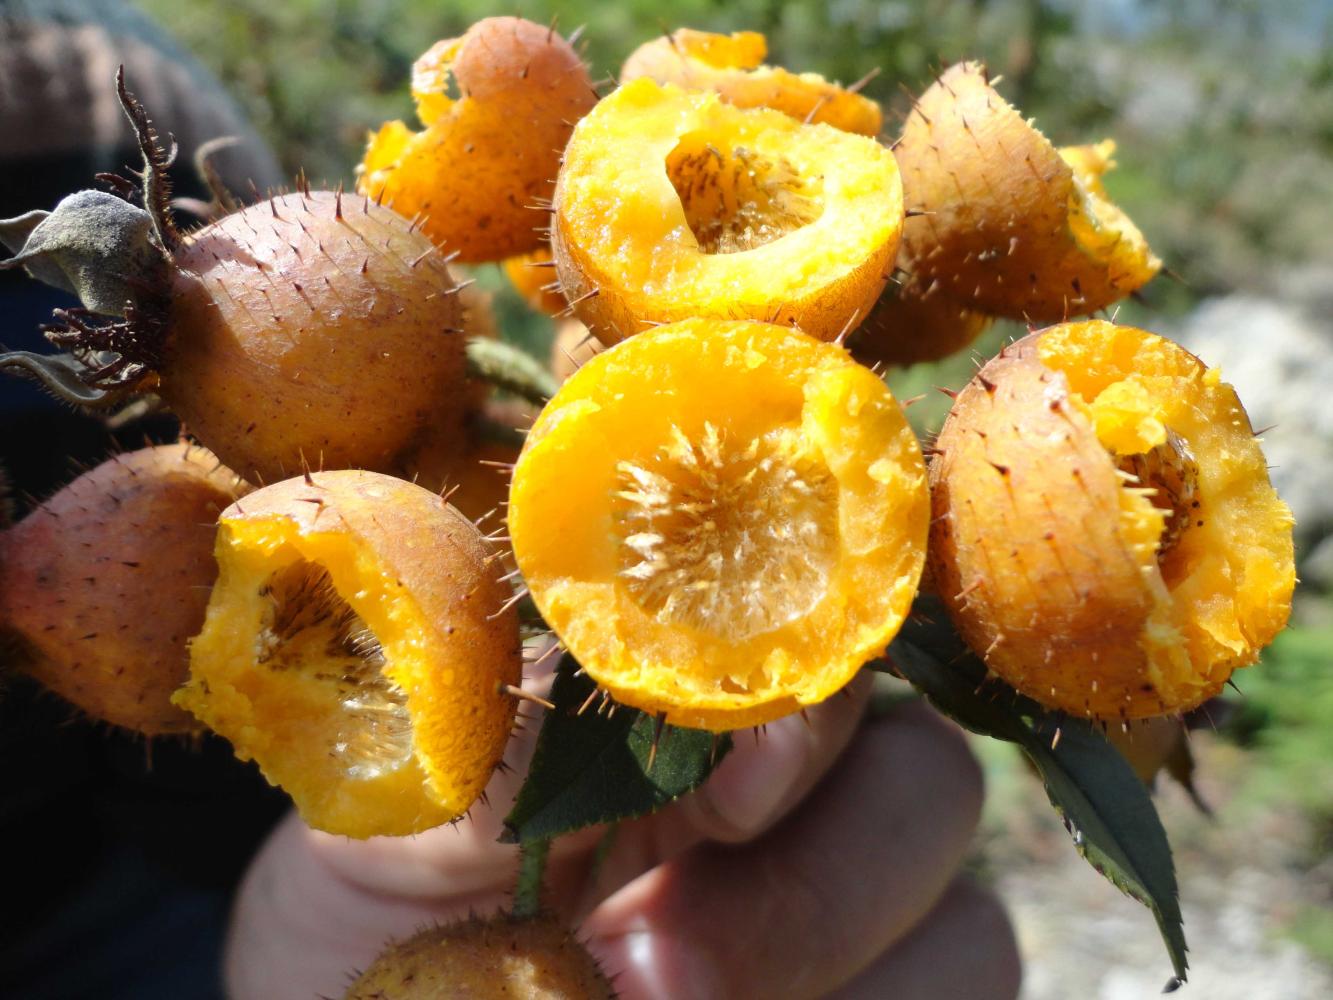 刺梨子酒所使用的刺梨子是一种有降血糖功效的野生果实,它含有丰富的